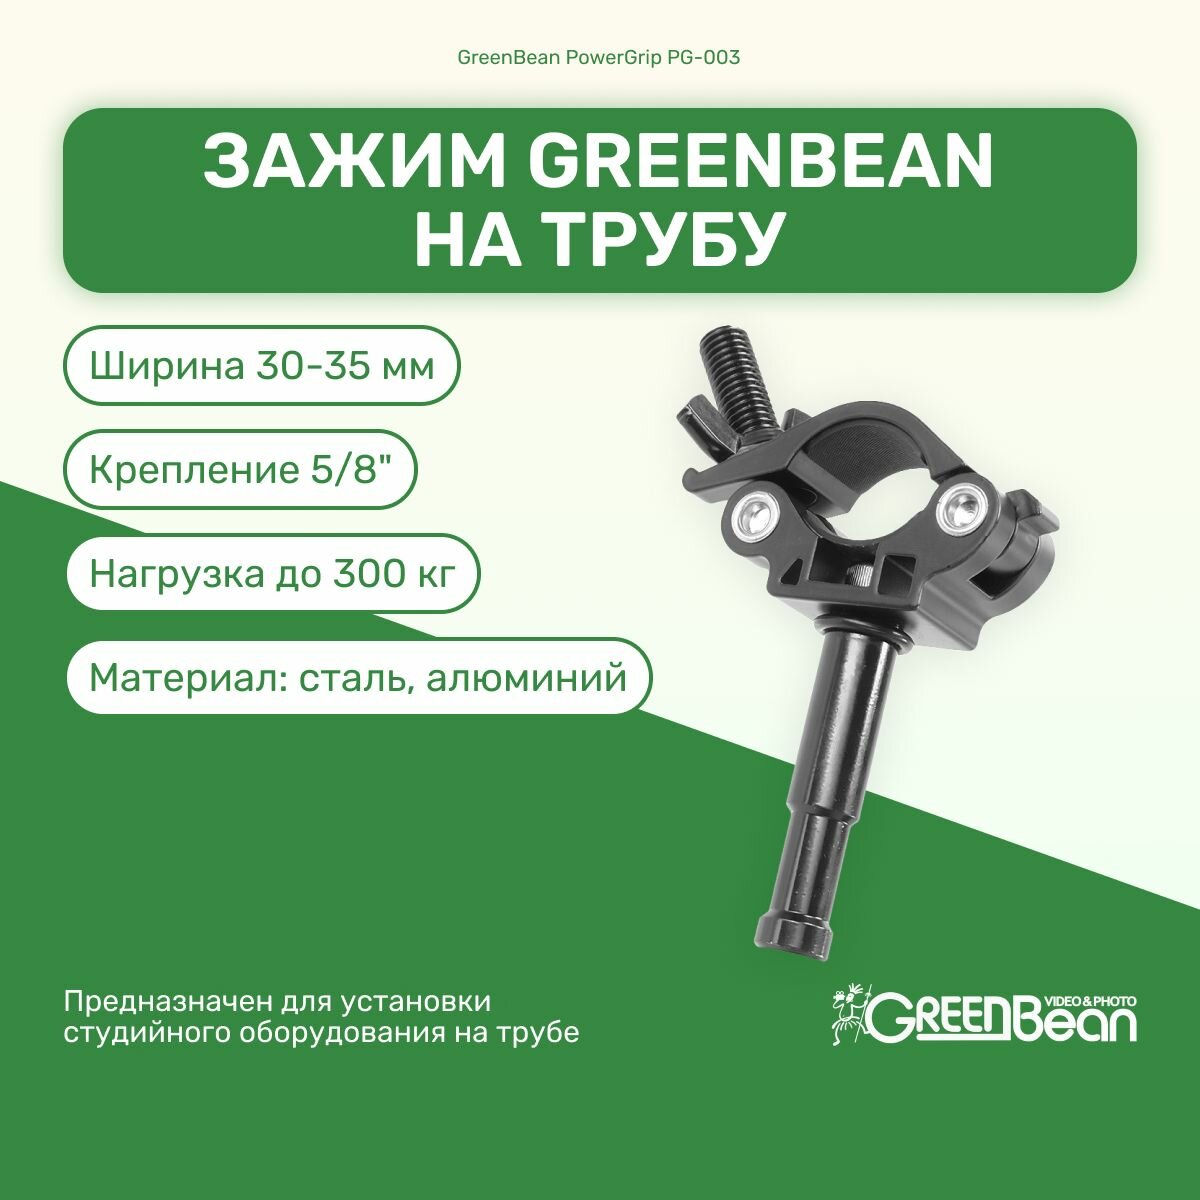 Зажим GreenBean PowerGrip PG-003 на трубу с креплением 5/8", держатель для фотооборудования, крепление для студийного оборудования